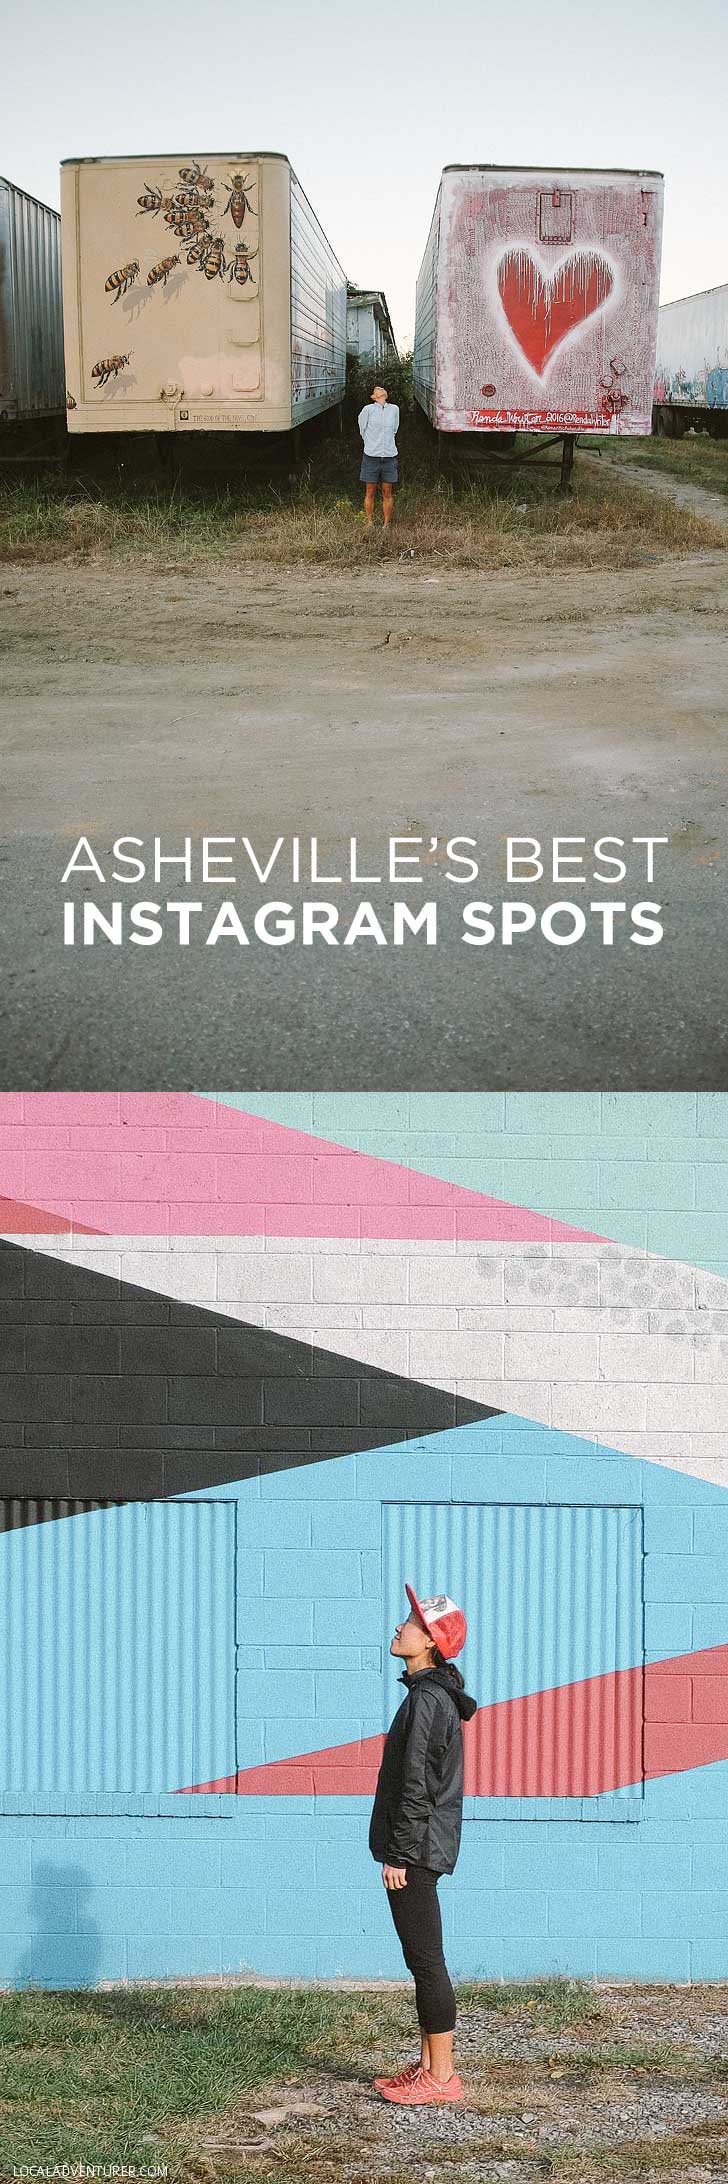 Best Instagram Spots in Asheville NC // localadventurer.com